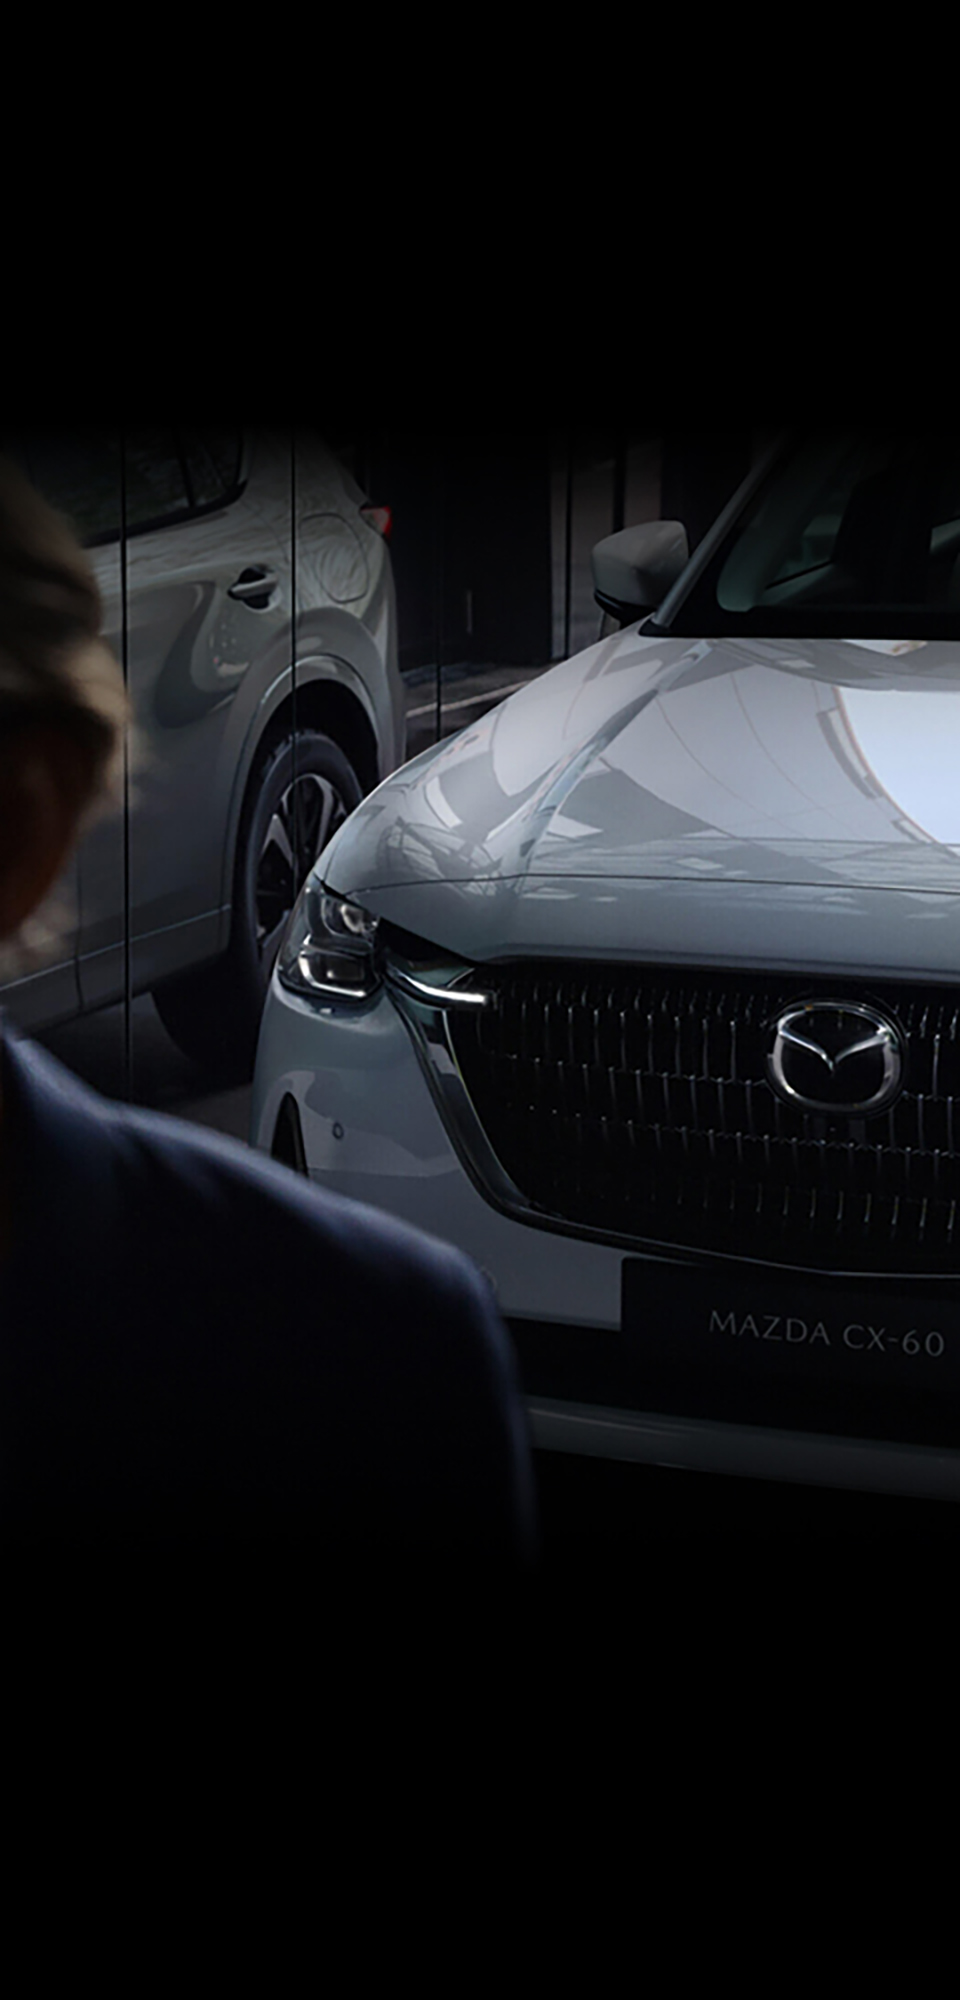 Der neue Mazda CX-60 Plug-in-Hybrid-SUV von vorne, wie er sich in einer Fensterscheibe spiegelt